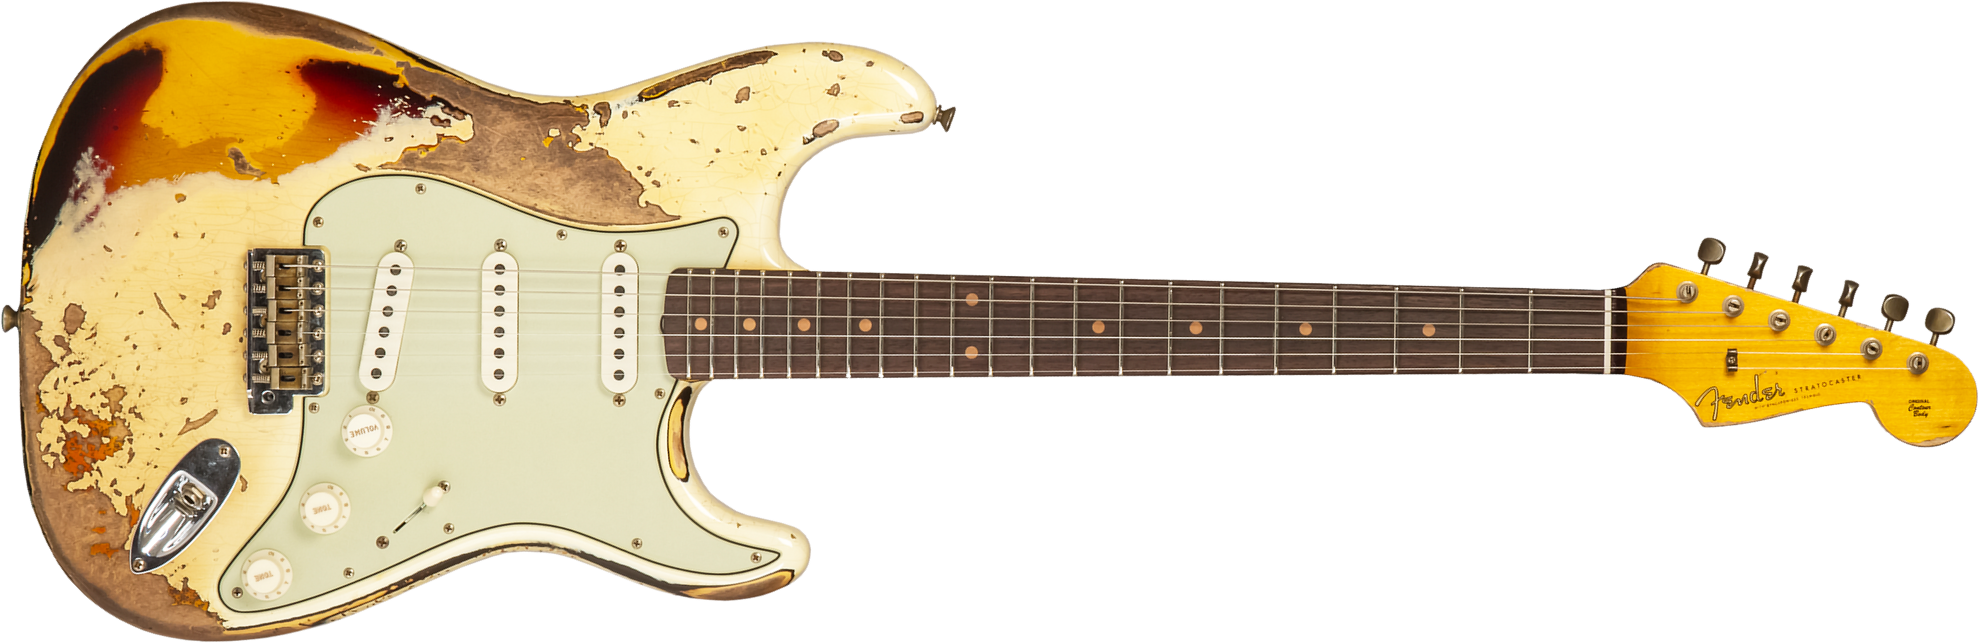 Fender Custom Shop Strat 1959 3s Trem Rw #cz576436 - Super Heavy Relic Vintage White O. 3-color Sunburs - Guitare Électrique Forme Str - Main picture